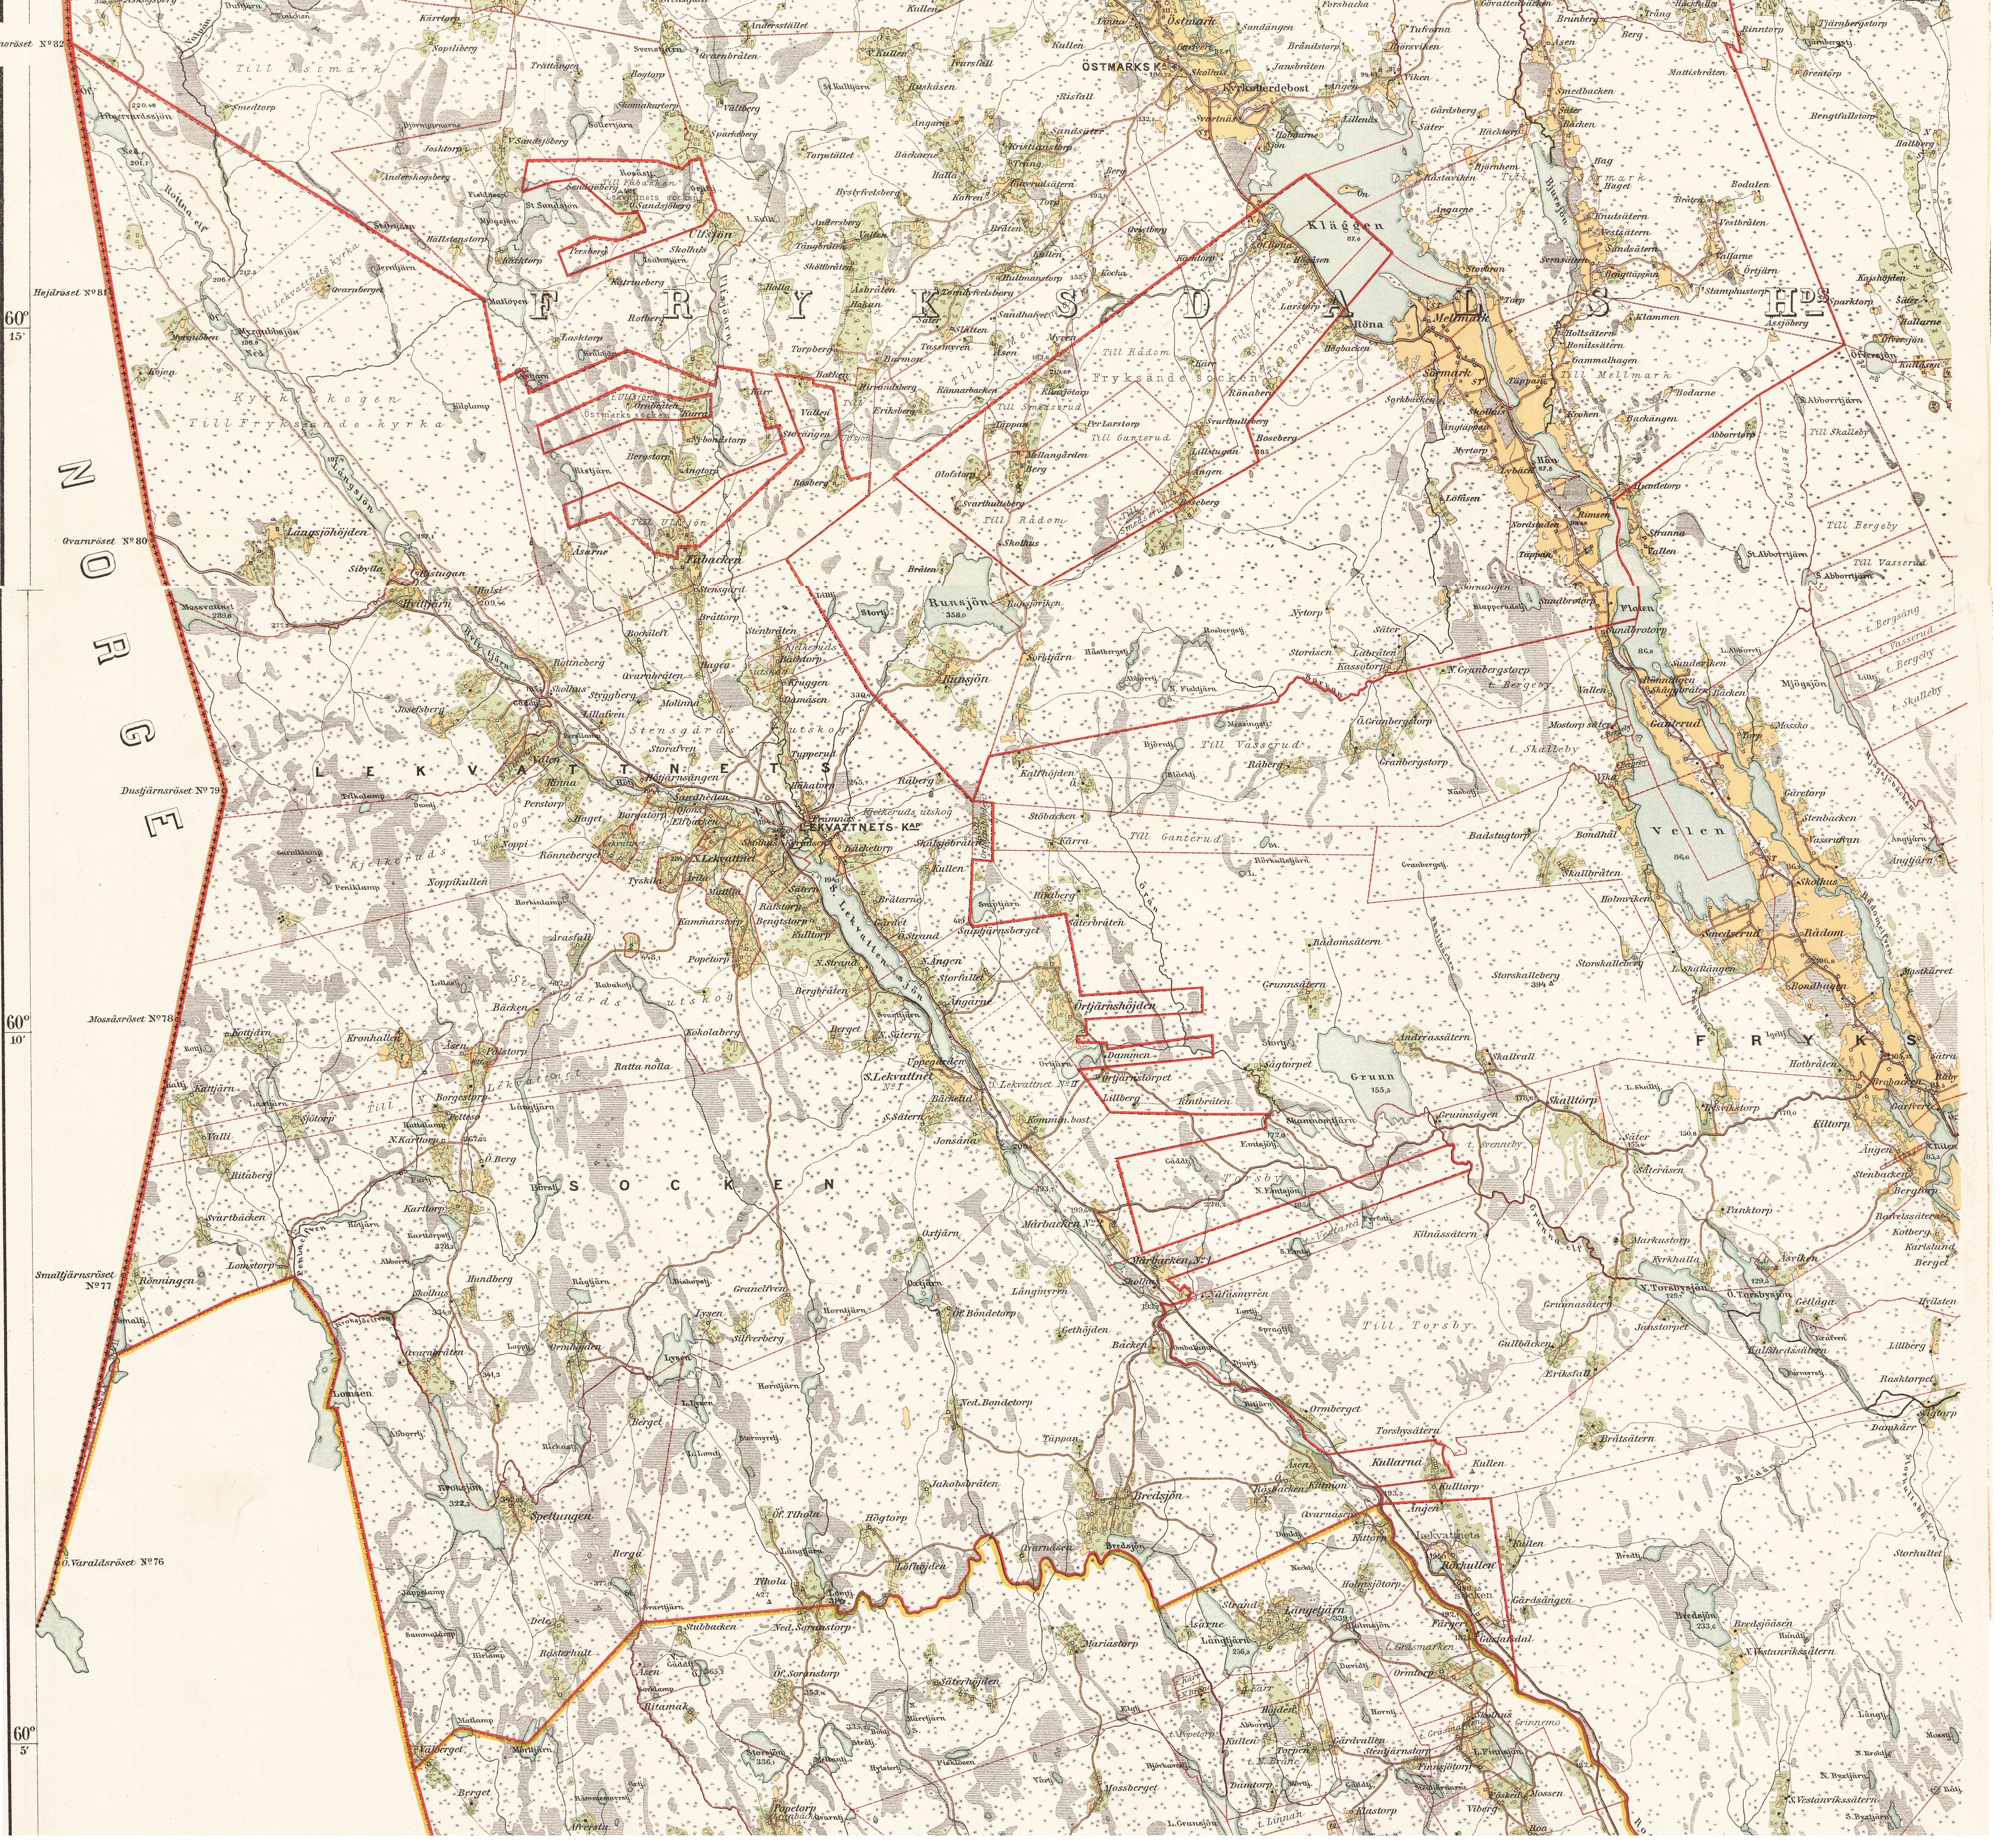  häradskarta 1883 över fryksdalen